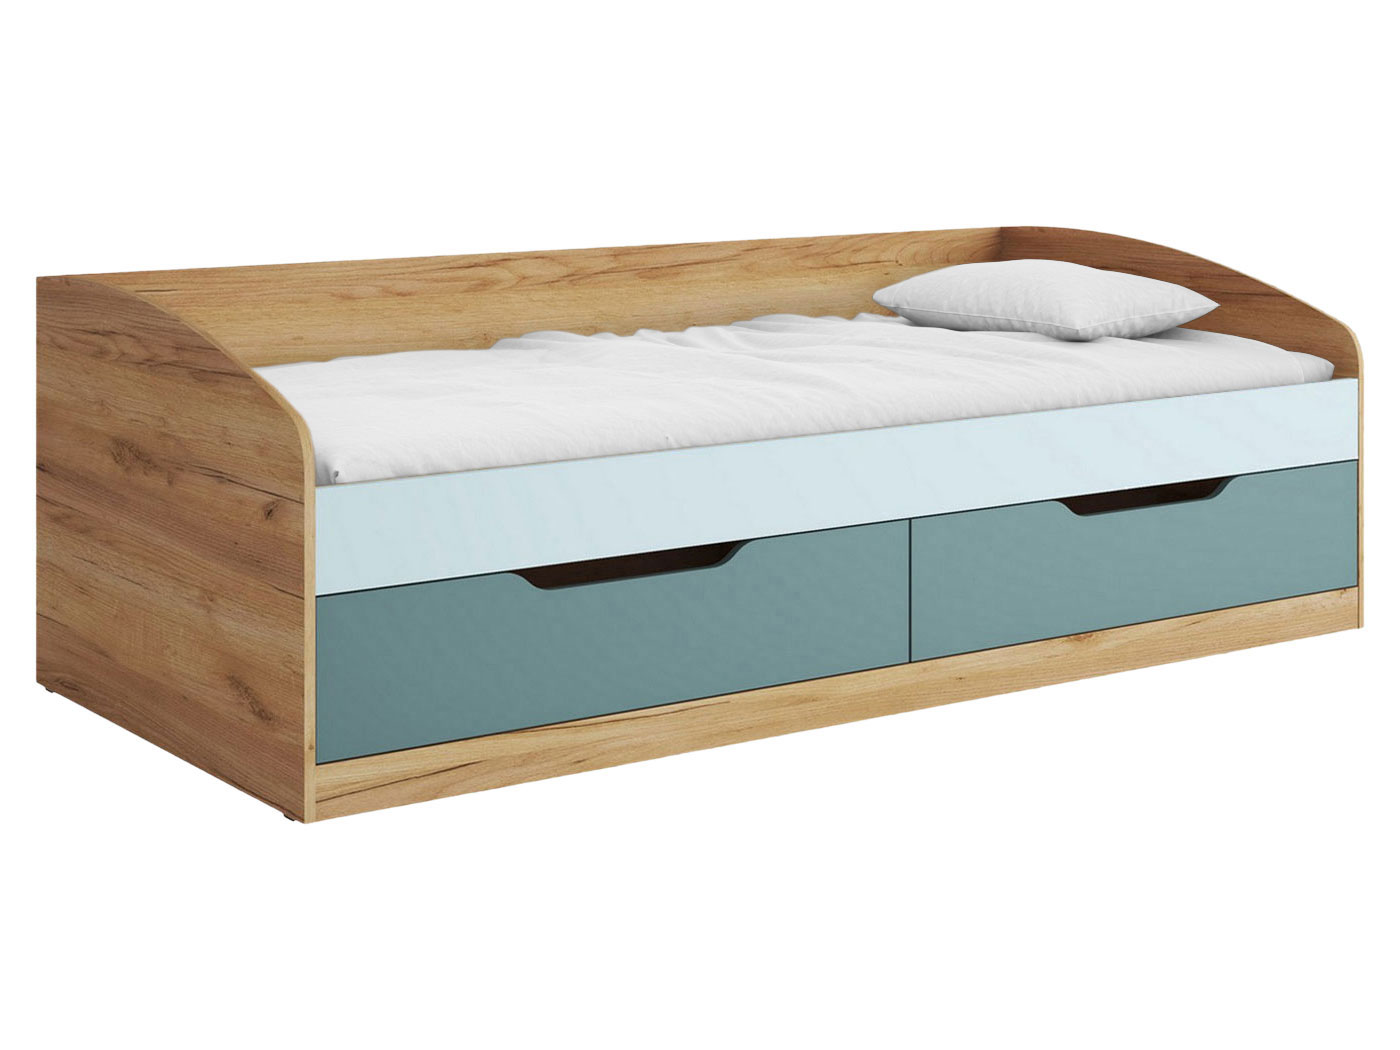 Детские кроватки LIP POLJCANE из натурального дерева - классика и современность.